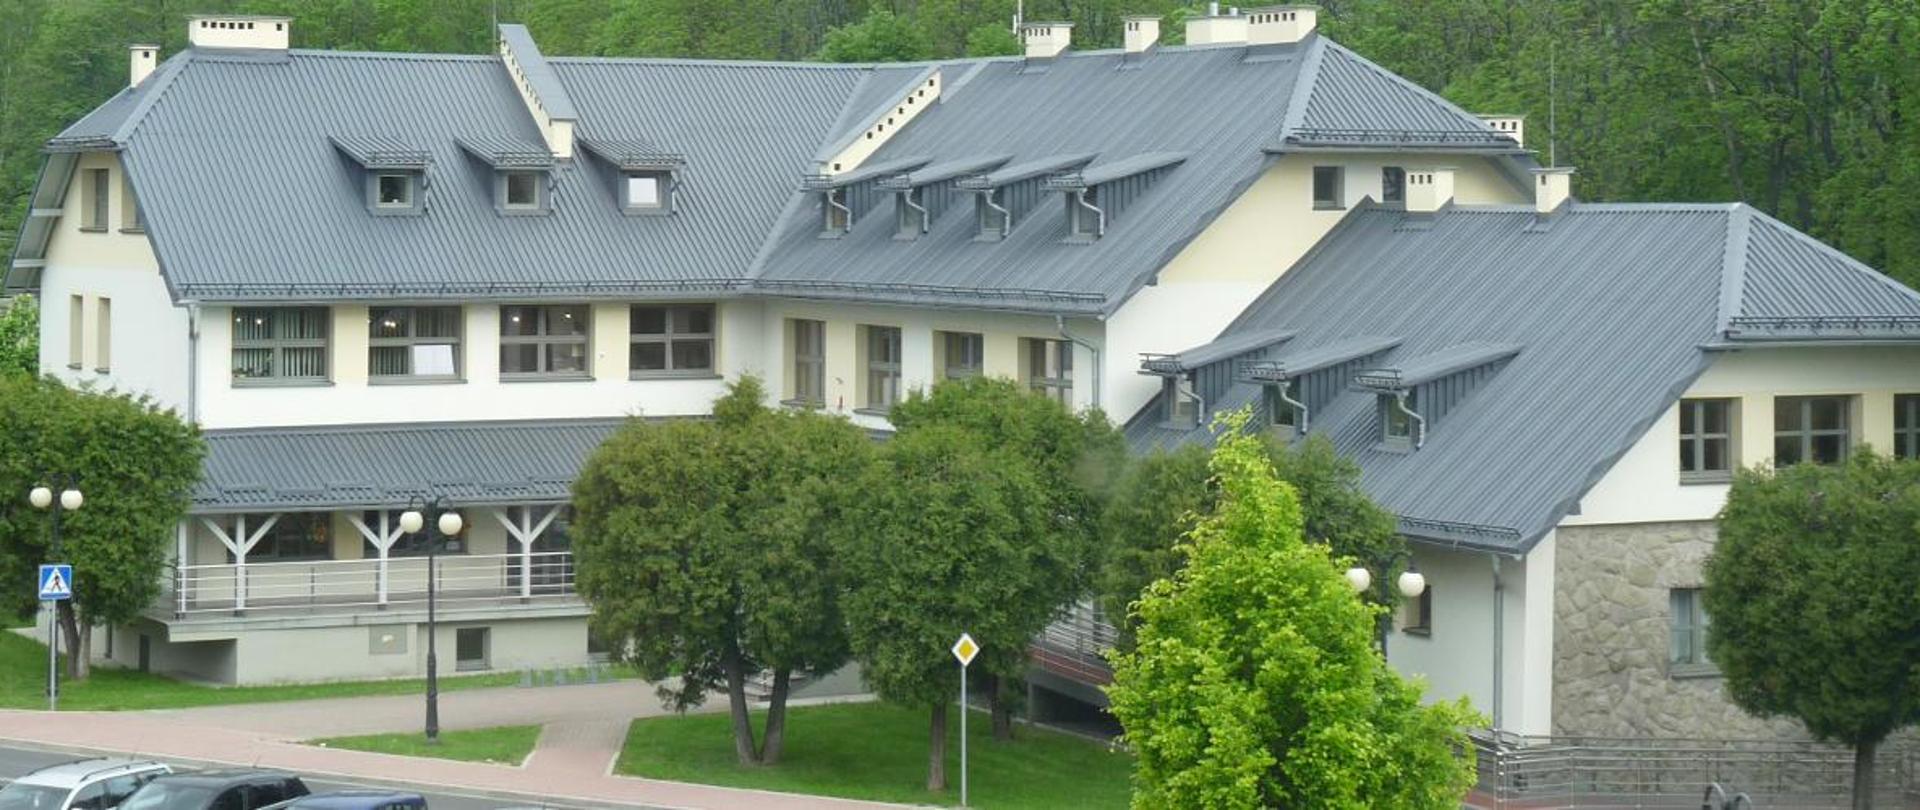 Widok na budynek Urzędu Gminy Buczkowice od strony Szkoły Podstawowej im. Mikołaja Kopernika w Buczkowicach